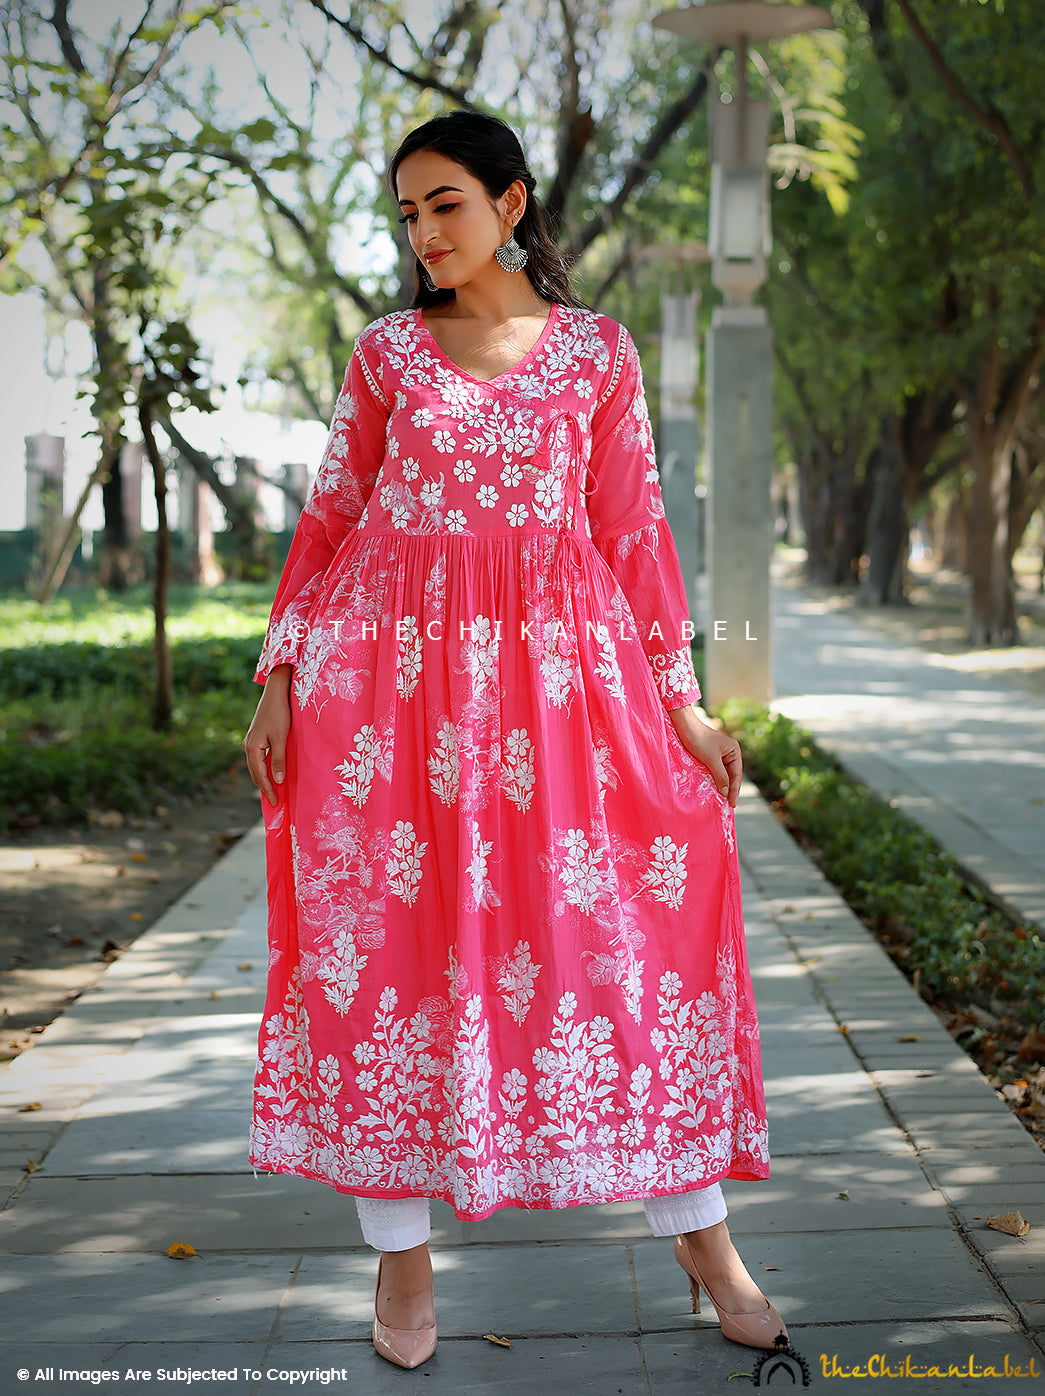 Traditional Kurtis - Buy Indian Traditional Designer Kurtis Online for Women